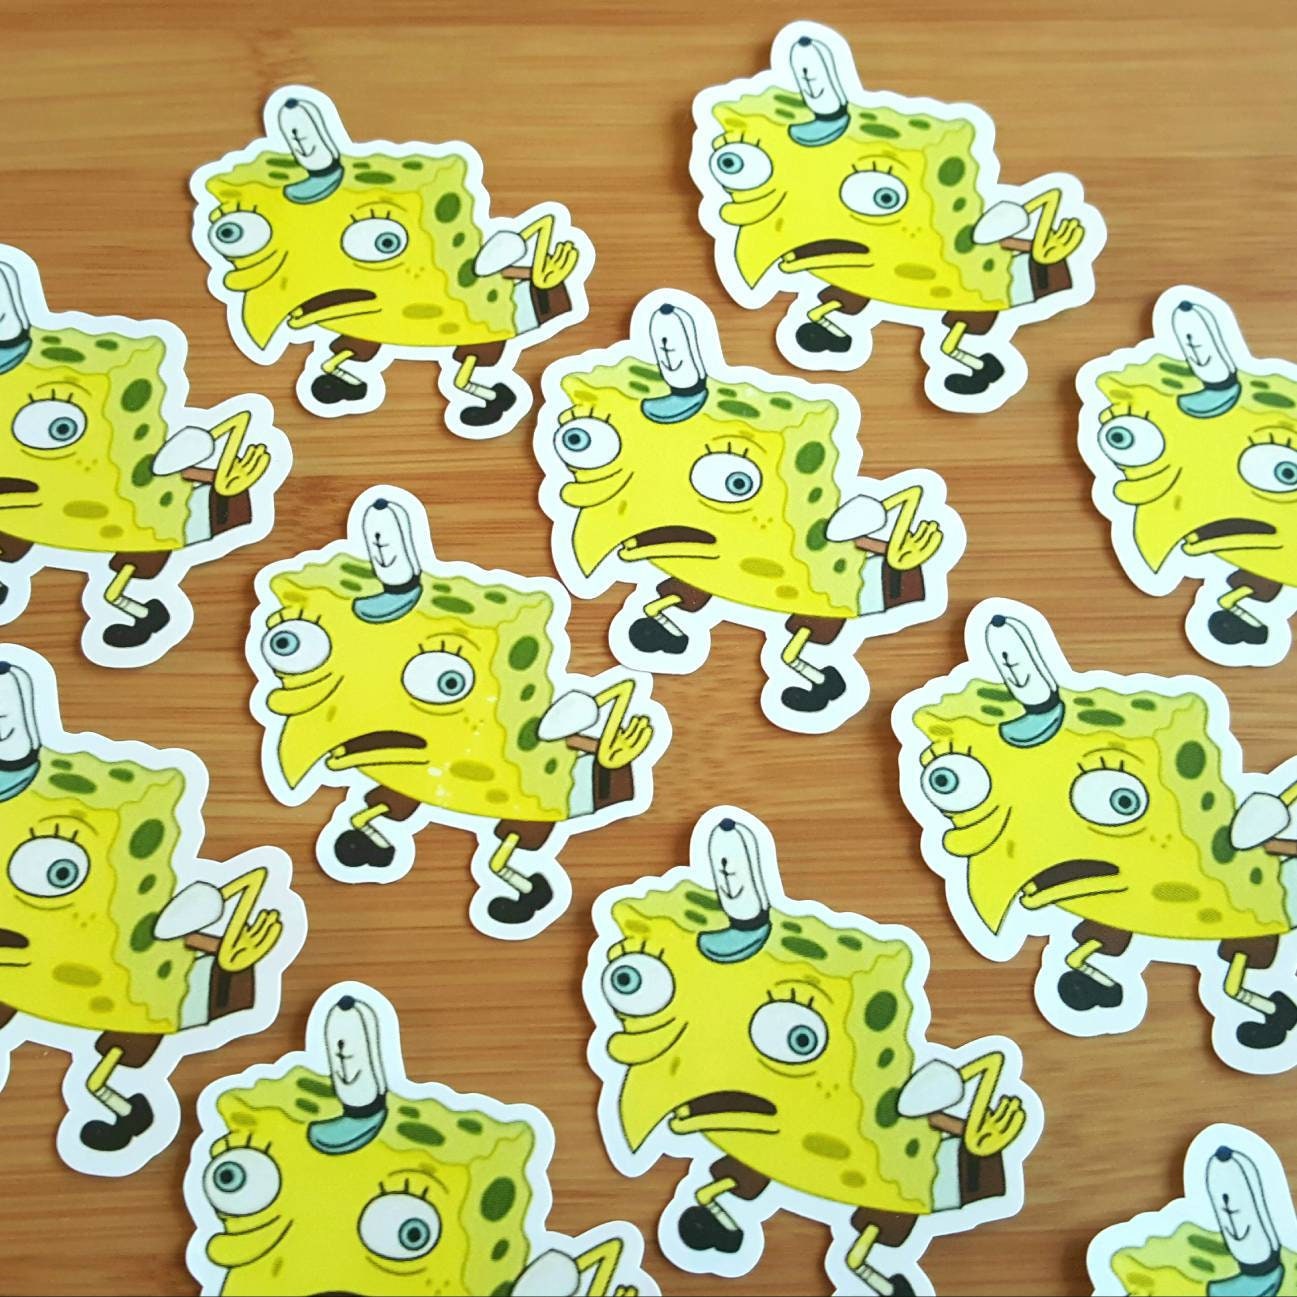 Mocking Spongebob Meme Sticker Aesthetic Tumblr Laptop Etsy